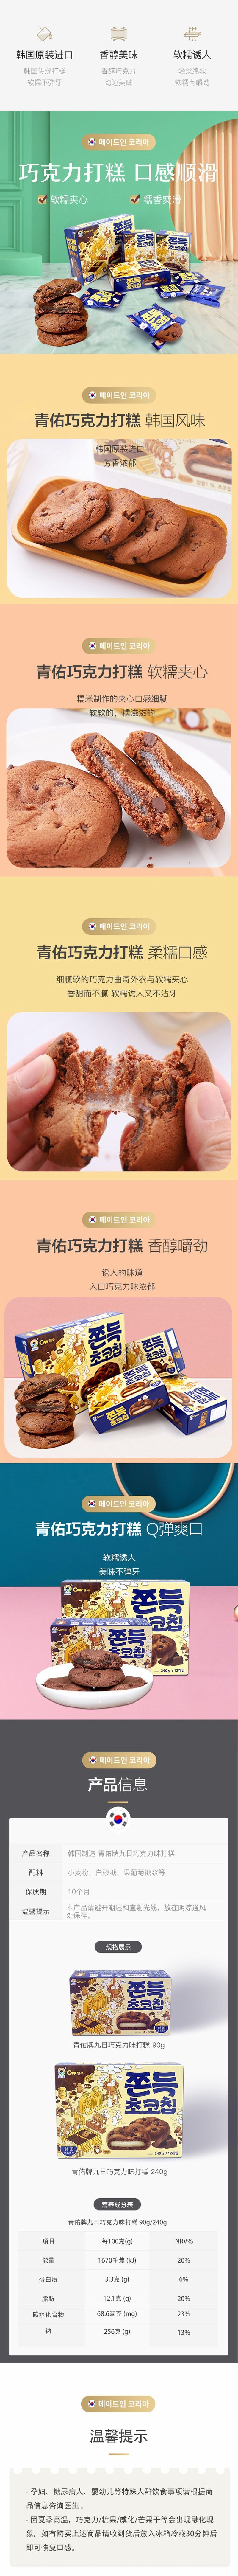 【中国直邮】网易严选 糯滋Q弹 韩国制造巧克力打糕 麻薯曲奇 巧克力味 240g